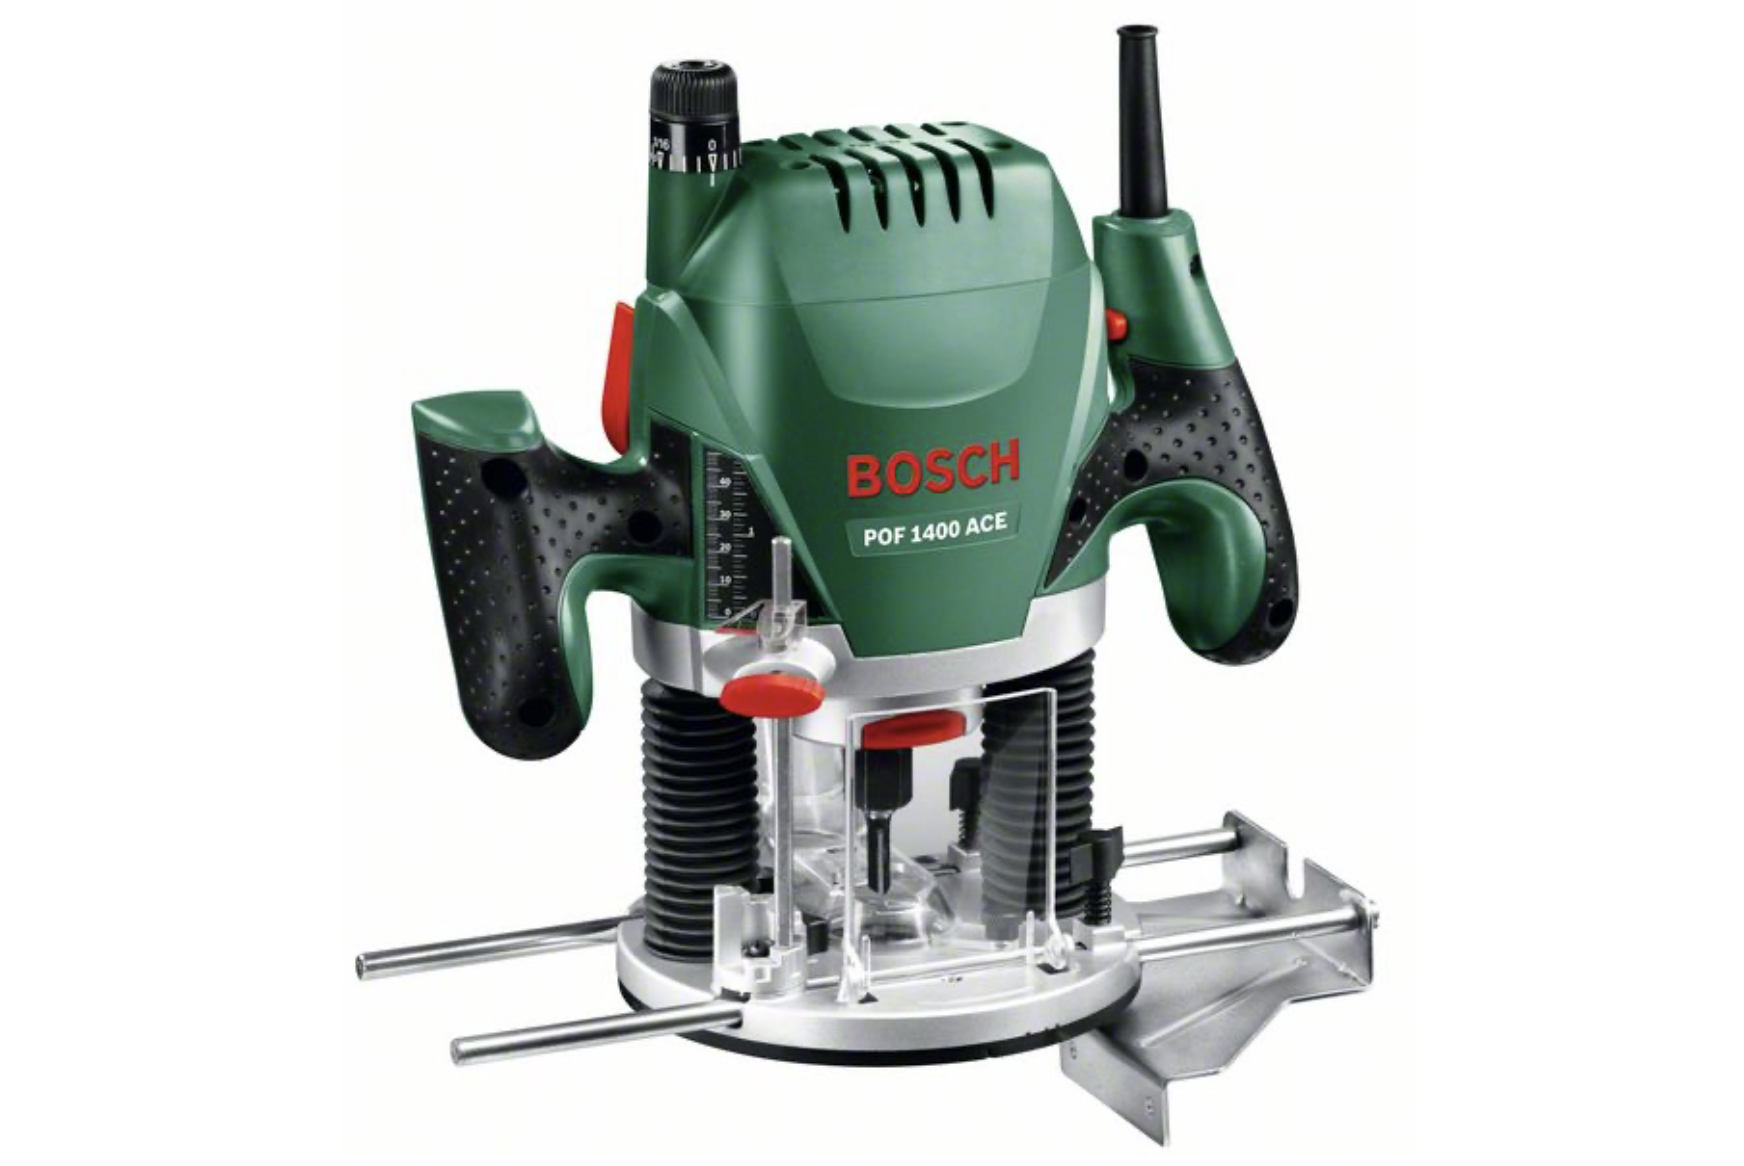 Bosch POF 1400 ACE Oberfräse 230V 1400W